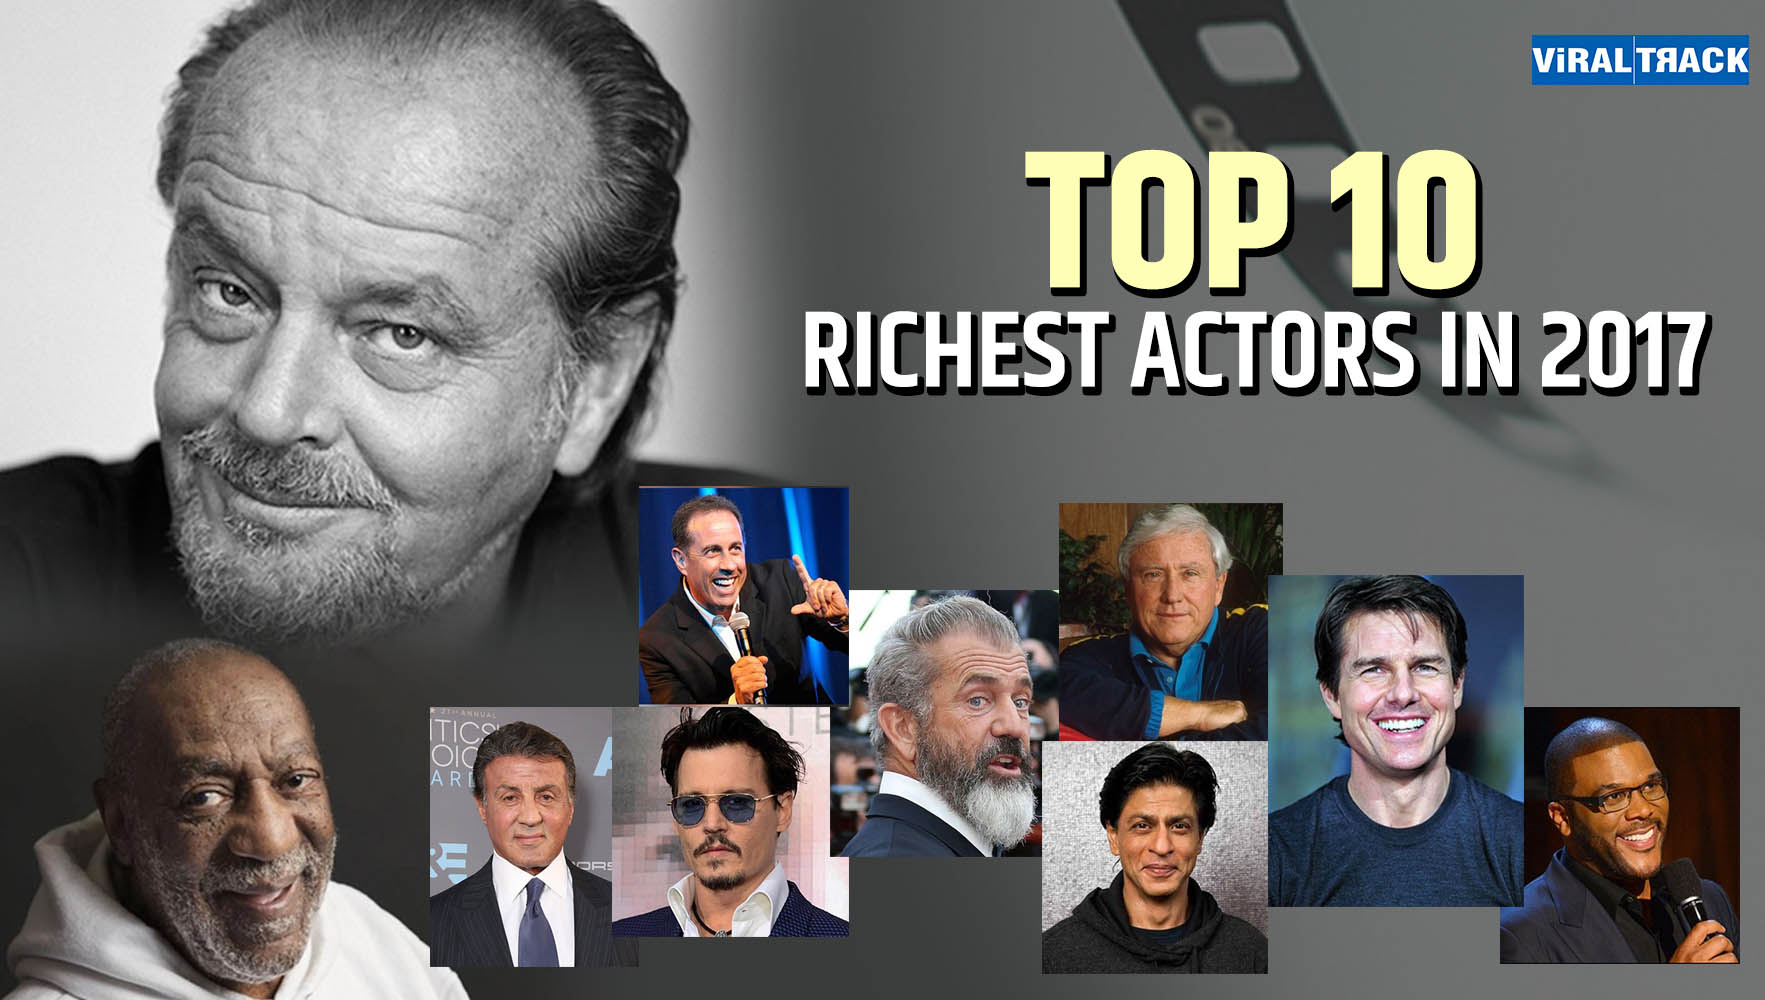 Top 10 Richest Actors in 2017